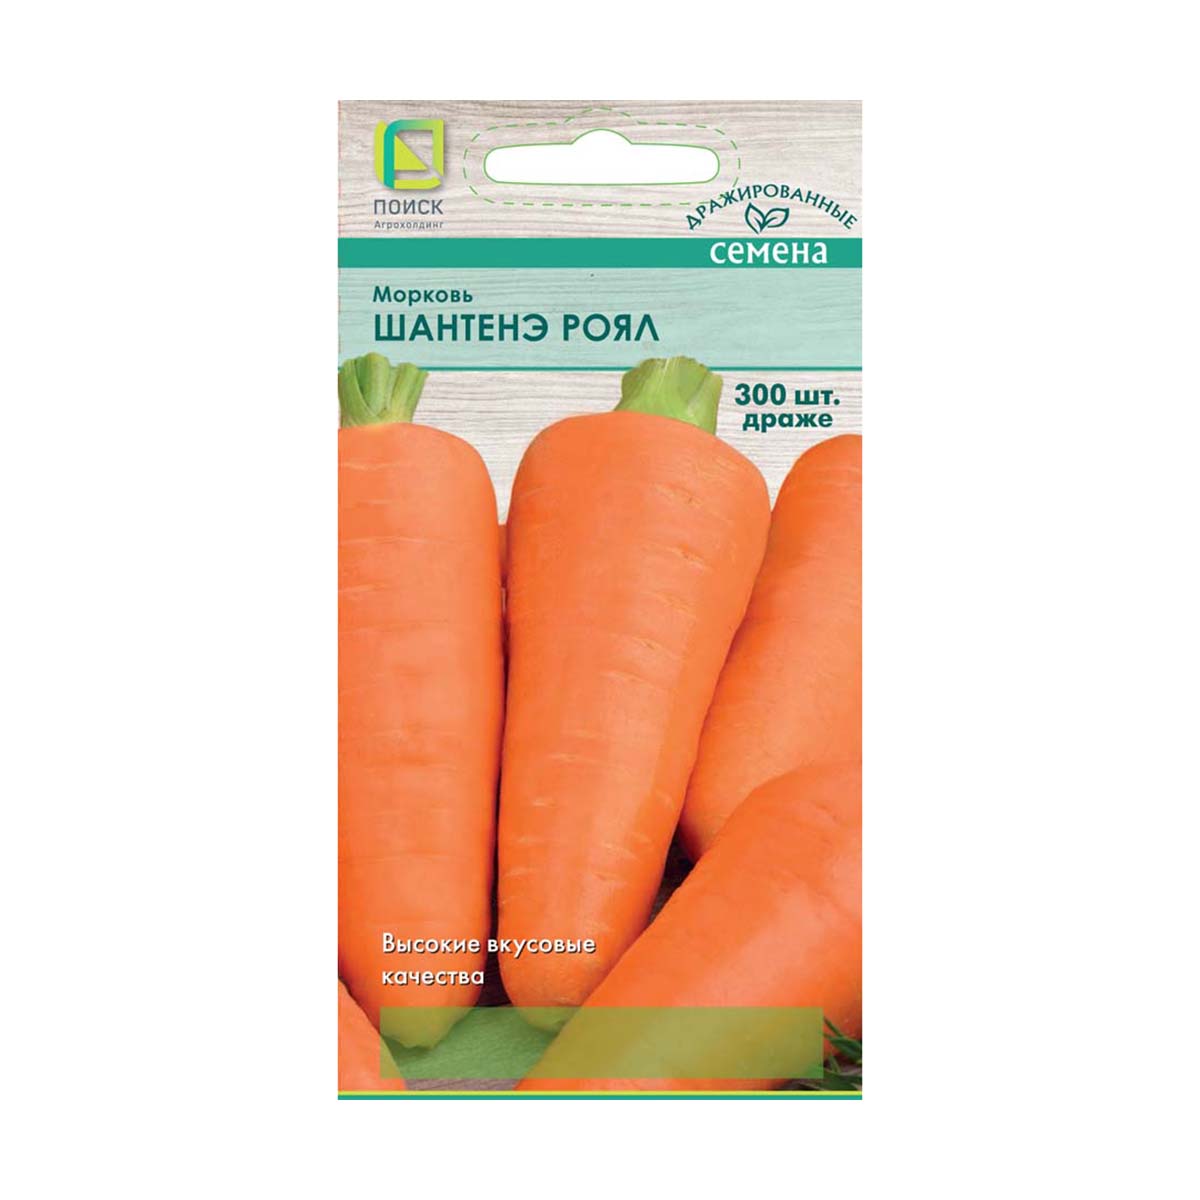 Семена дражированные морковь "шантенэ роял" (а) 300 шт. (10/100) "поиск"